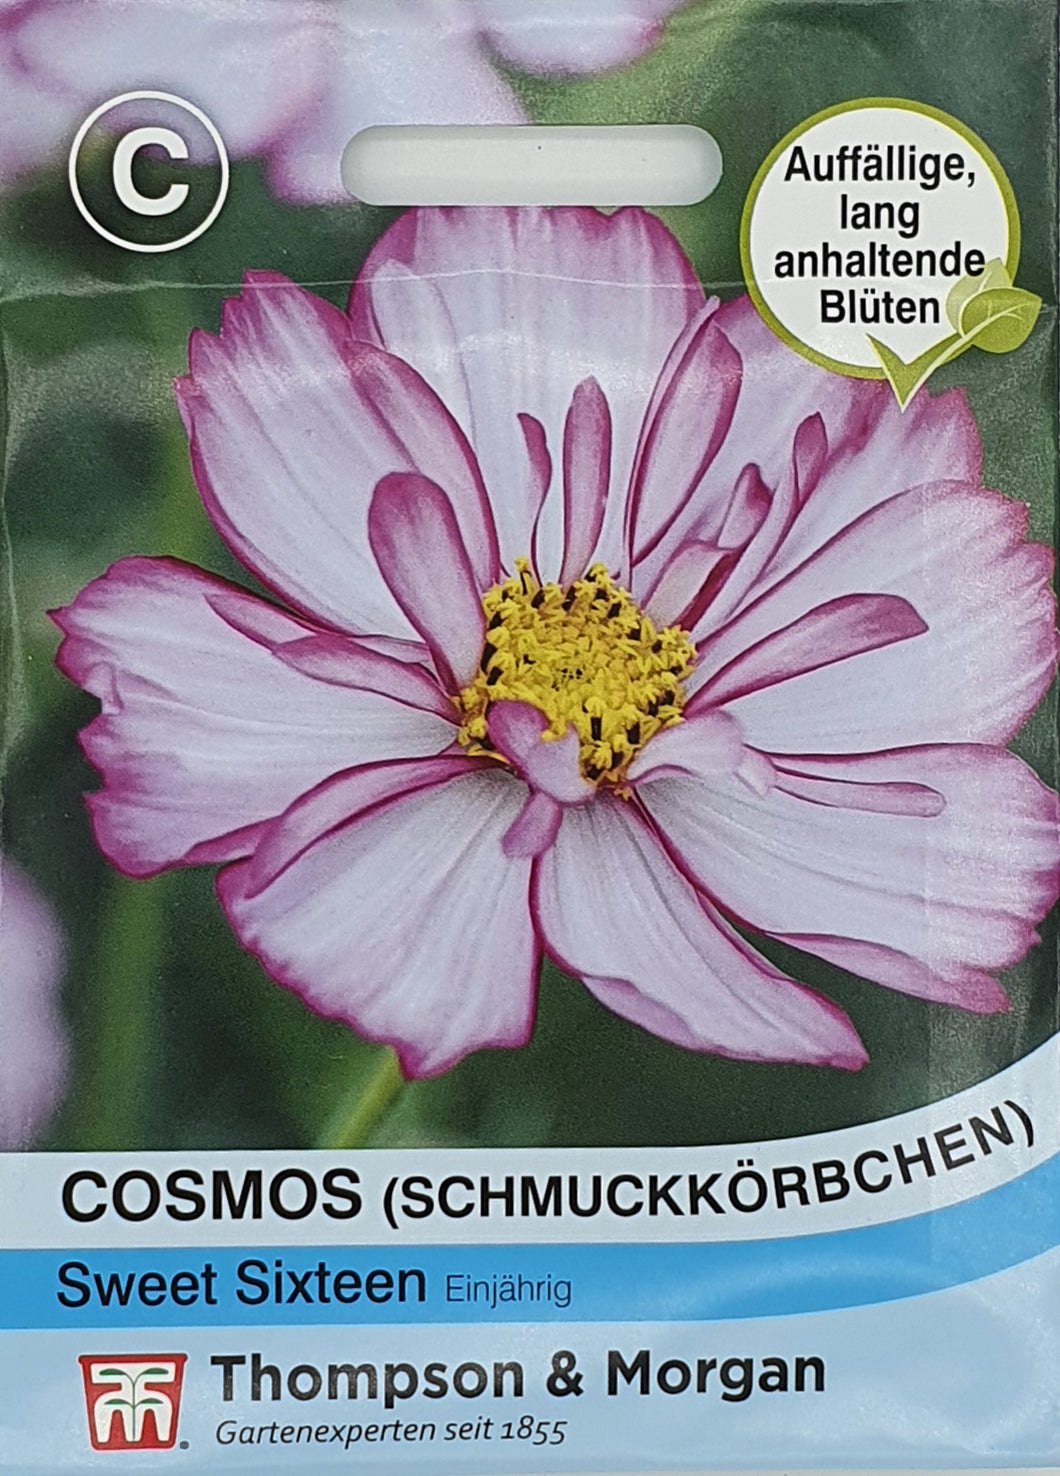 Cosmos (Schmuckkörbchen) Sweet Sixteen - Königliche Gartenakademie